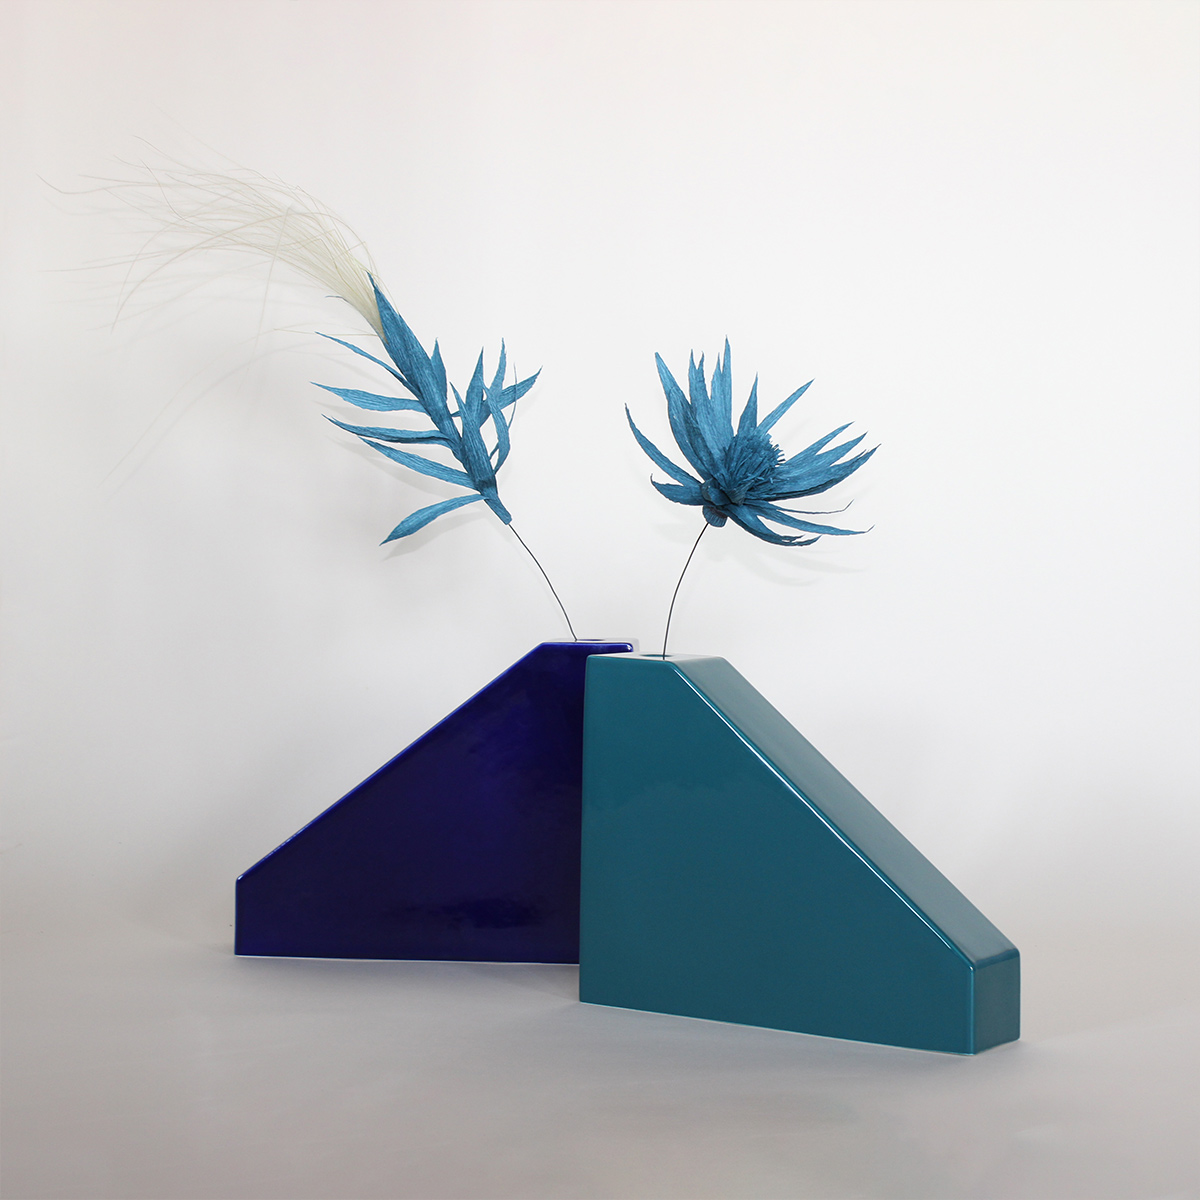 Vaso design Architetture Domestiche 3, blu lucido by Margherita  Fanti